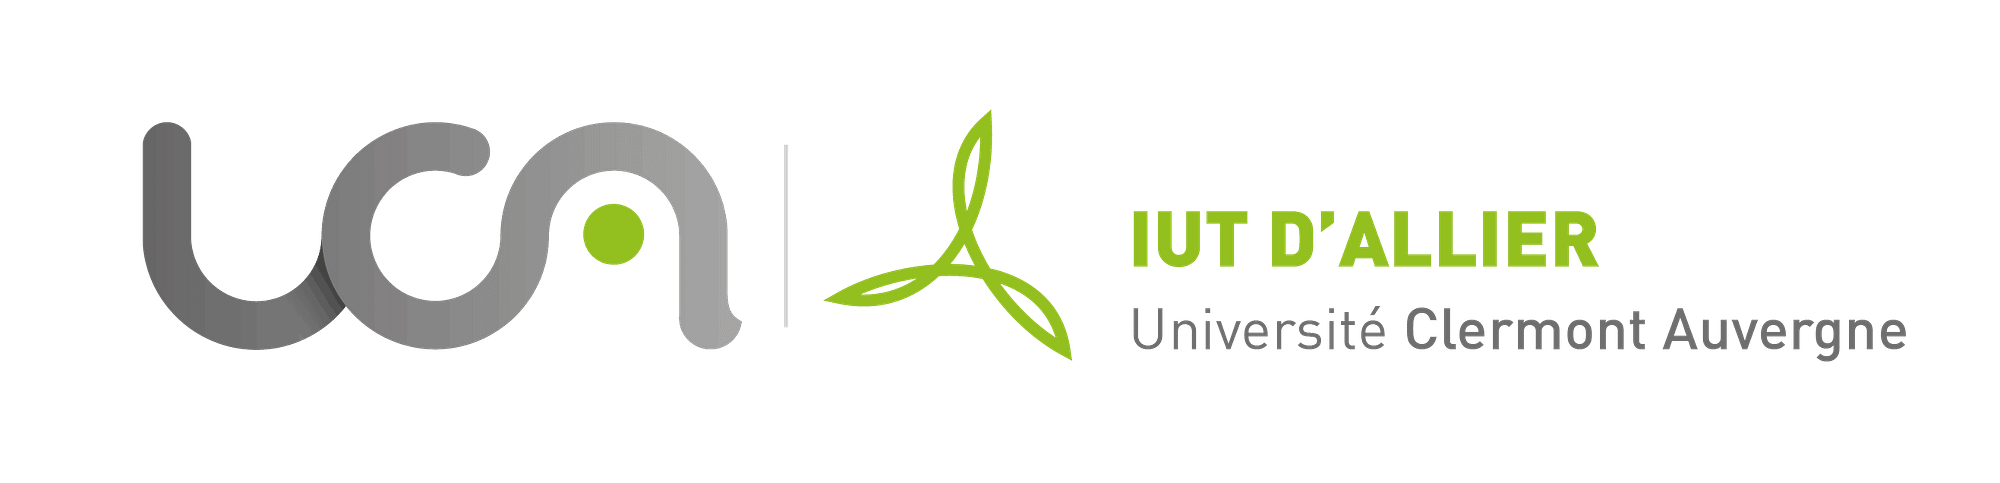 Logo_IUT_Allier_horizontal